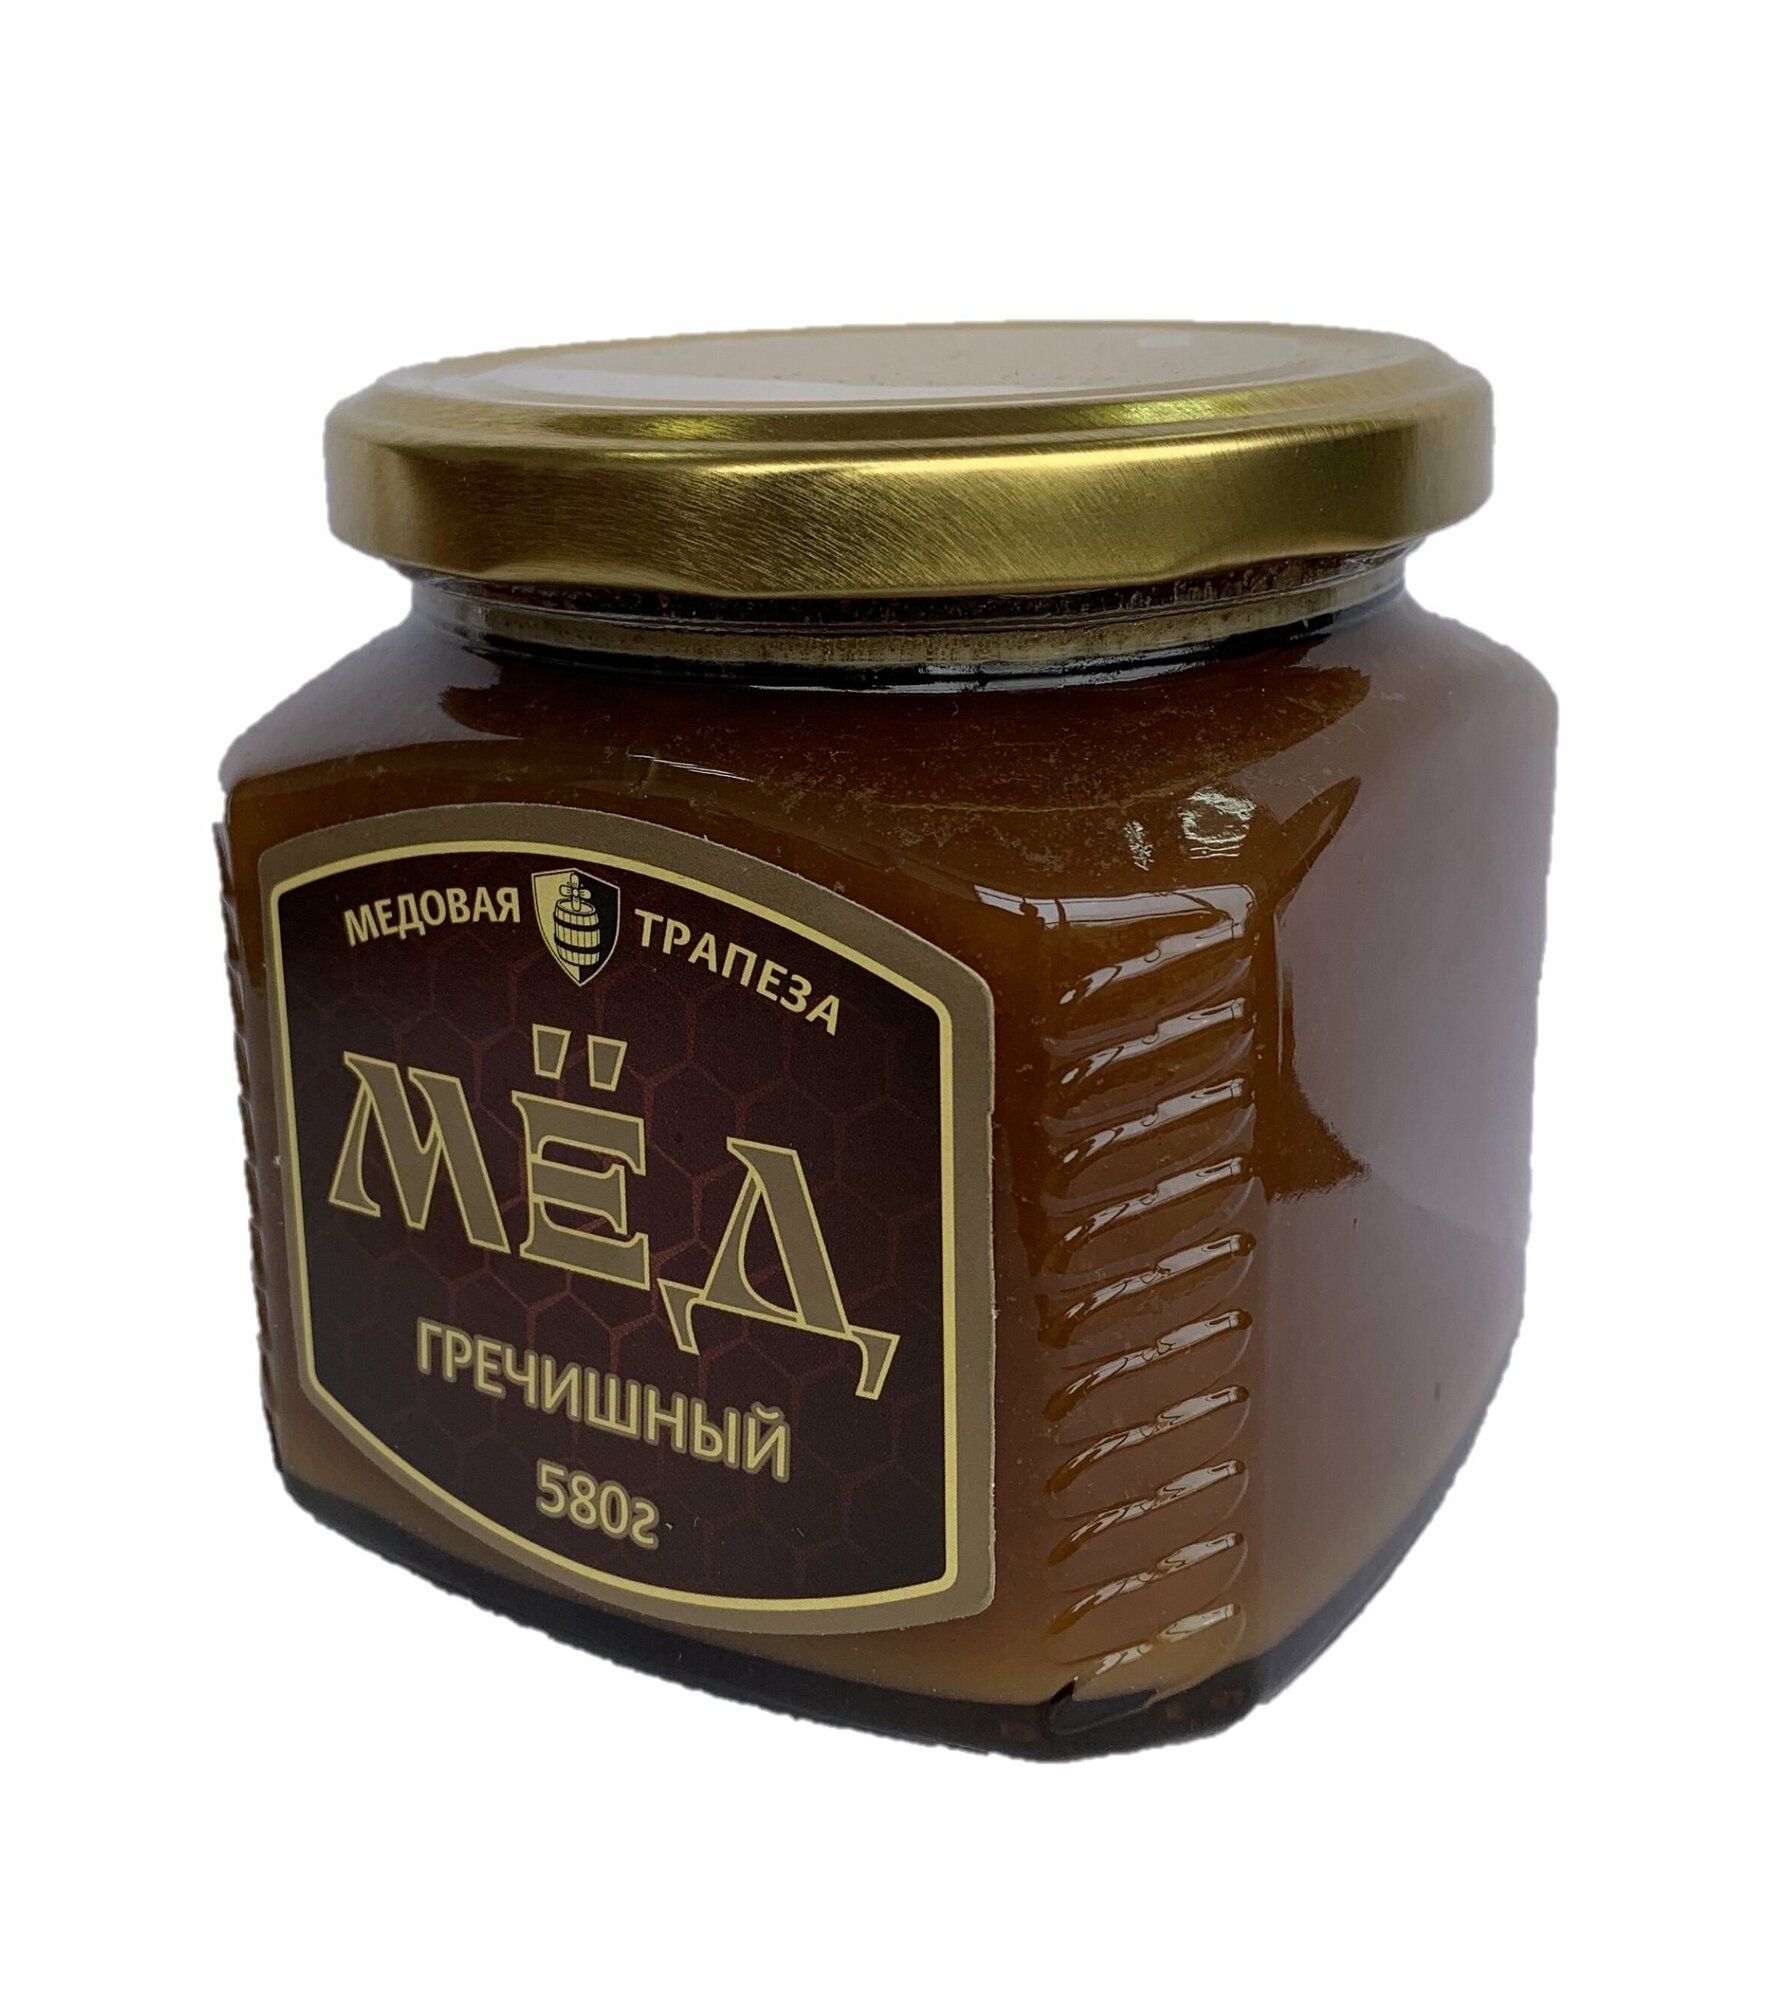 Мёд натуральный "медовая трапеза" Гречишный, 580 г - фотография № 6